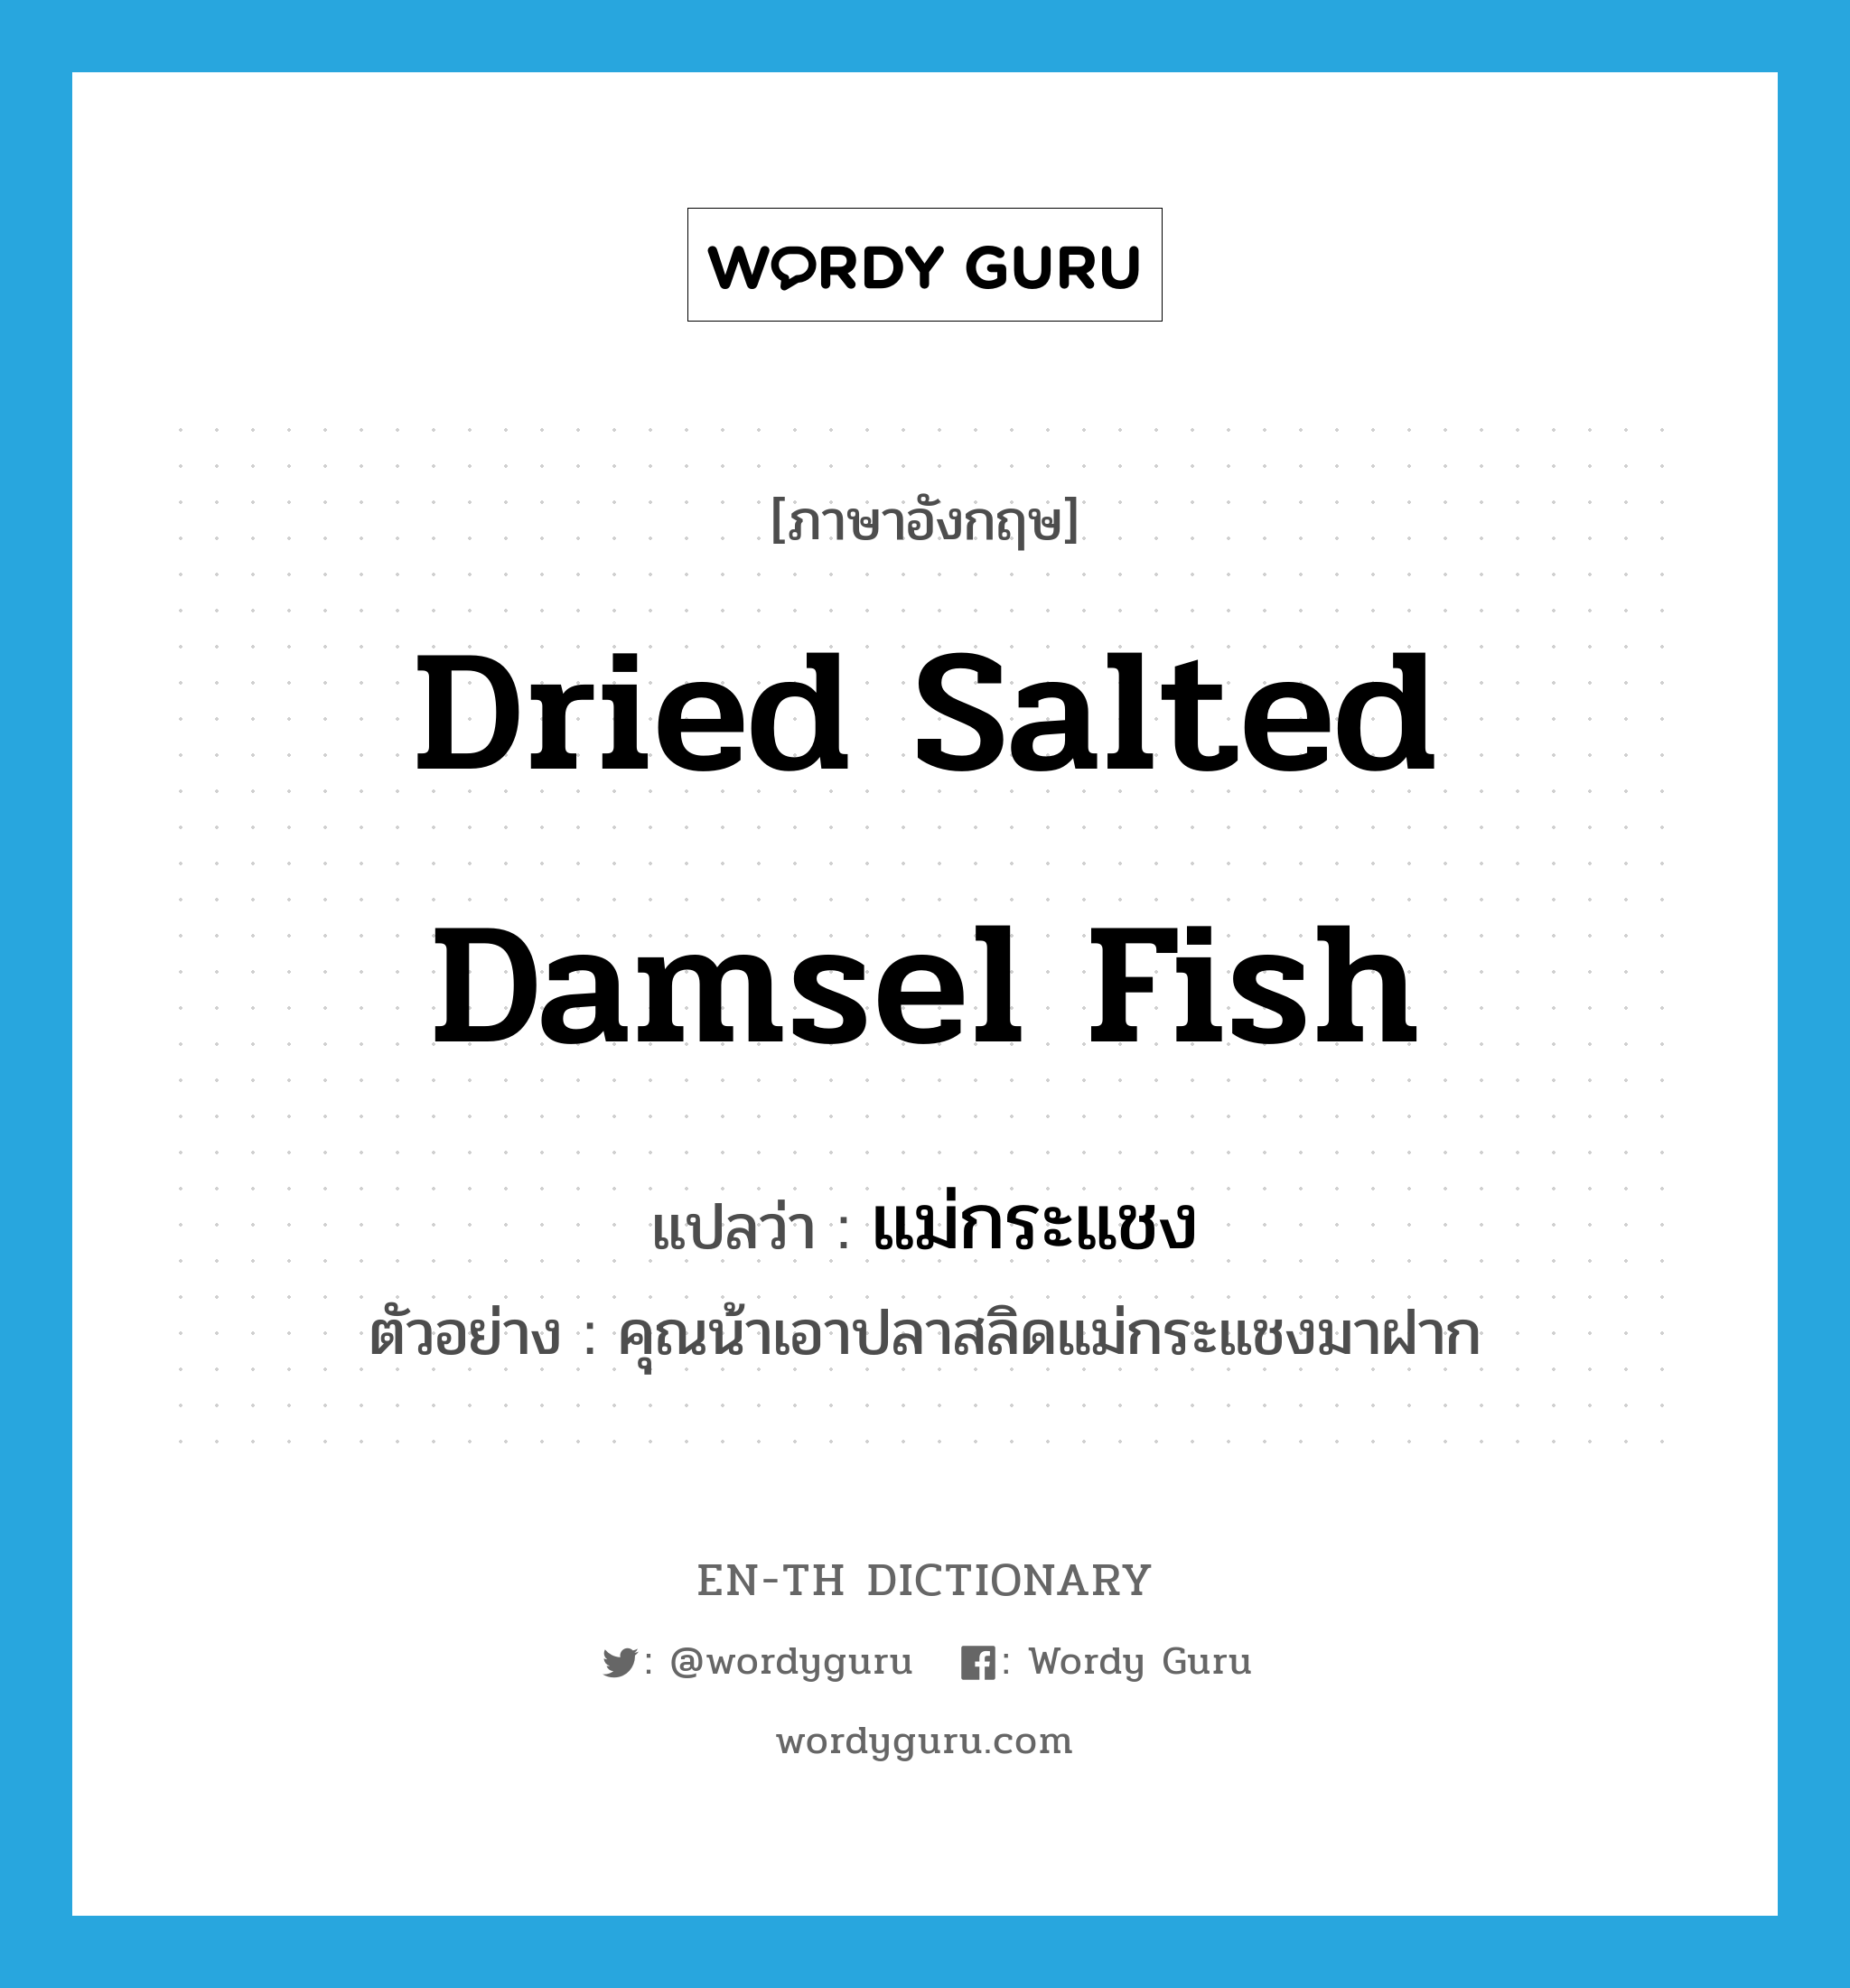 แม่กระแชง ภาษาอังกฤษ?, คำศัพท์ภาษาอังกฤษ แม่กระแชง แปลว่า dried salted damsel fish ประเภท N ตัวอย่าง คุณน้าเอาปลาสลิดแม่กระแชงมาฝาก หมวด N